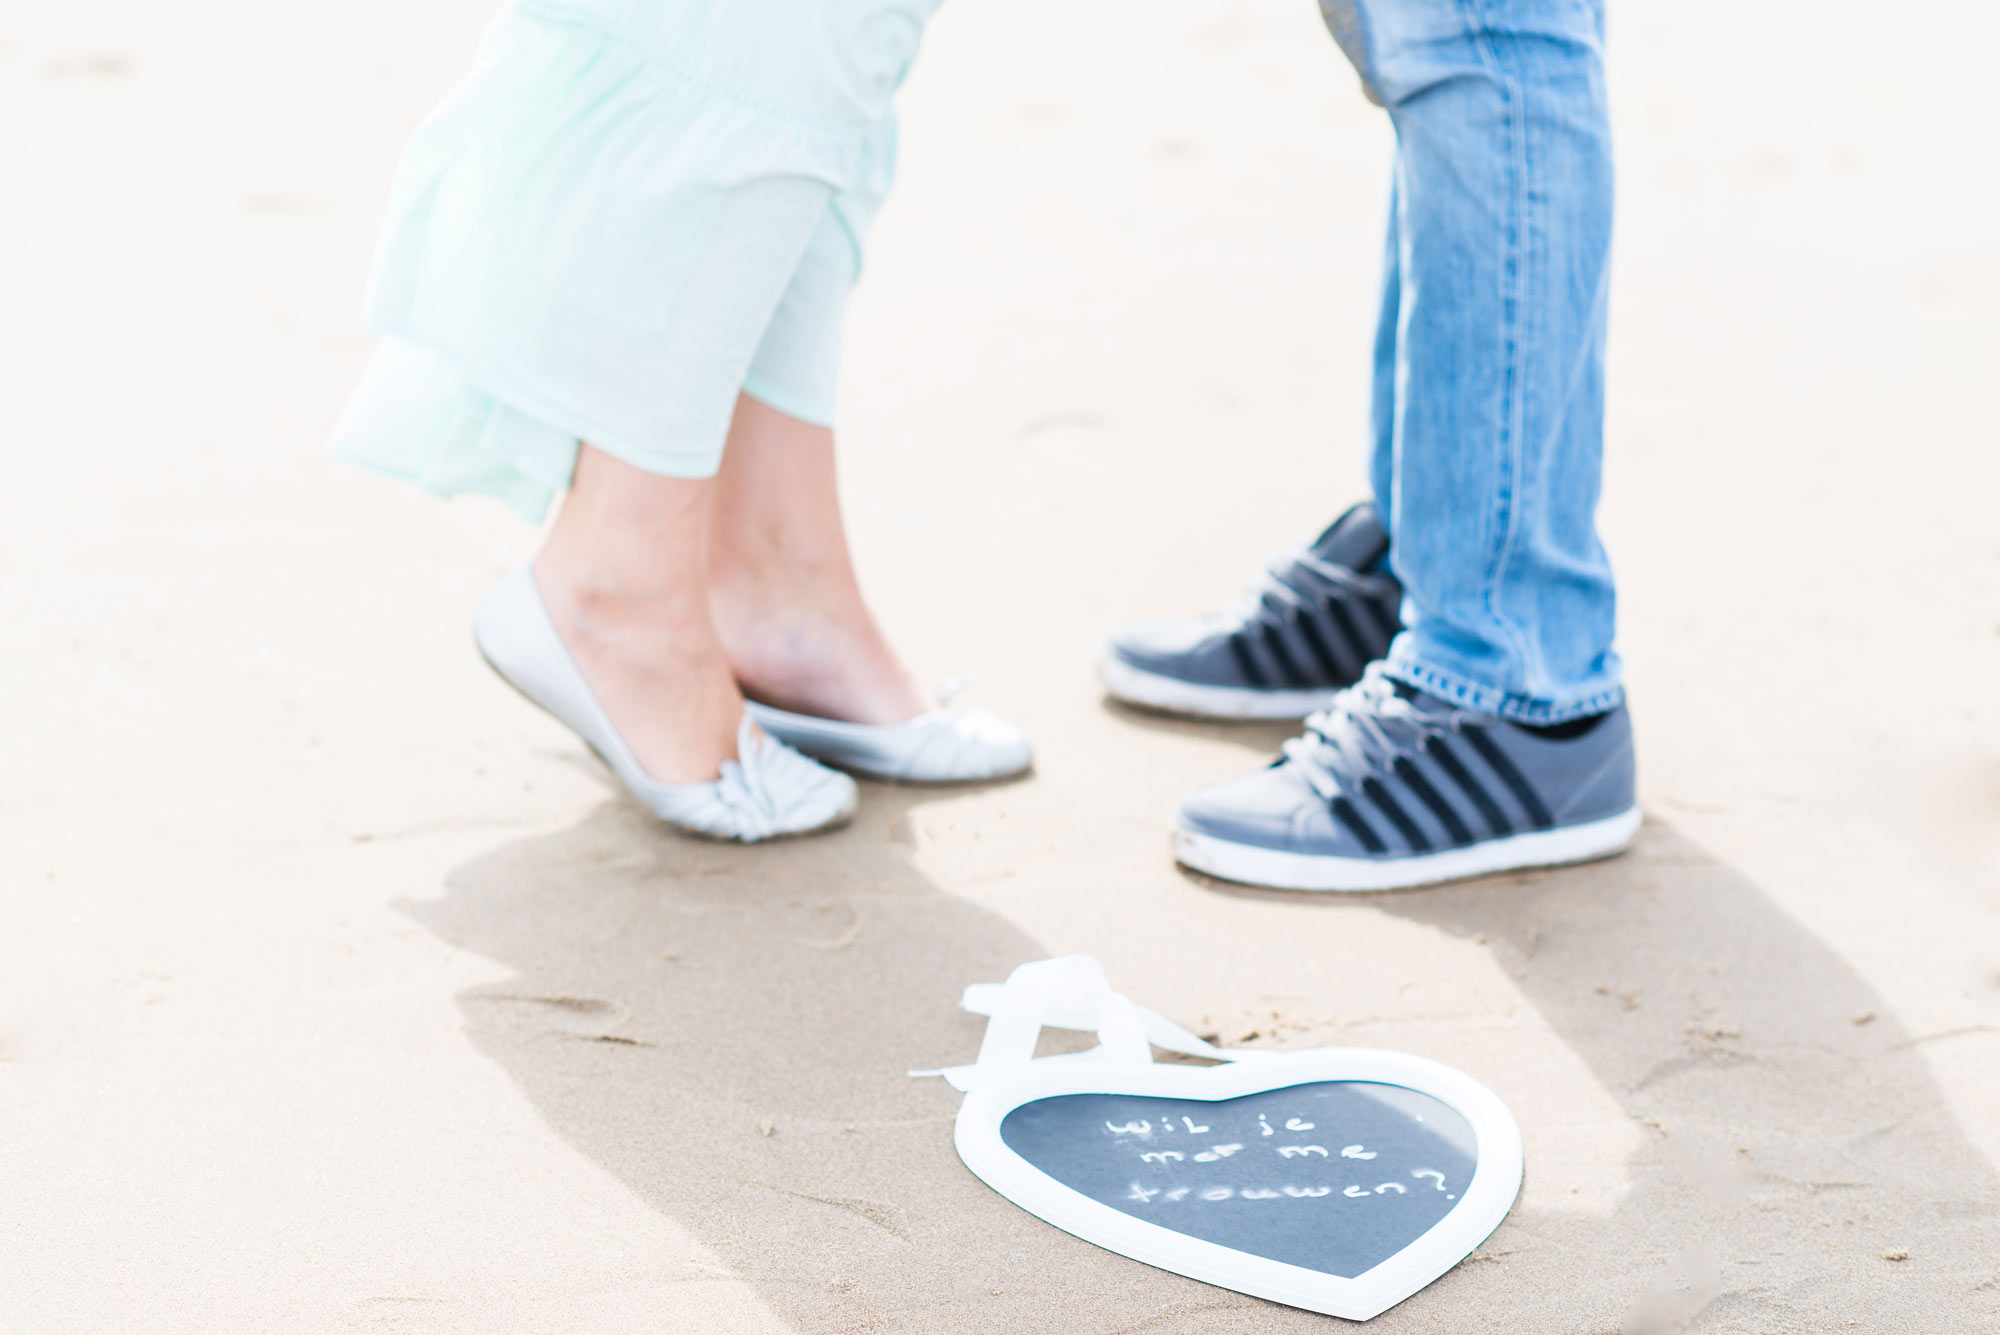 Loveshoot Fotoshoot Engagement Verlovingsshoot Strand Bloemendaal Zandvoort Parnassia